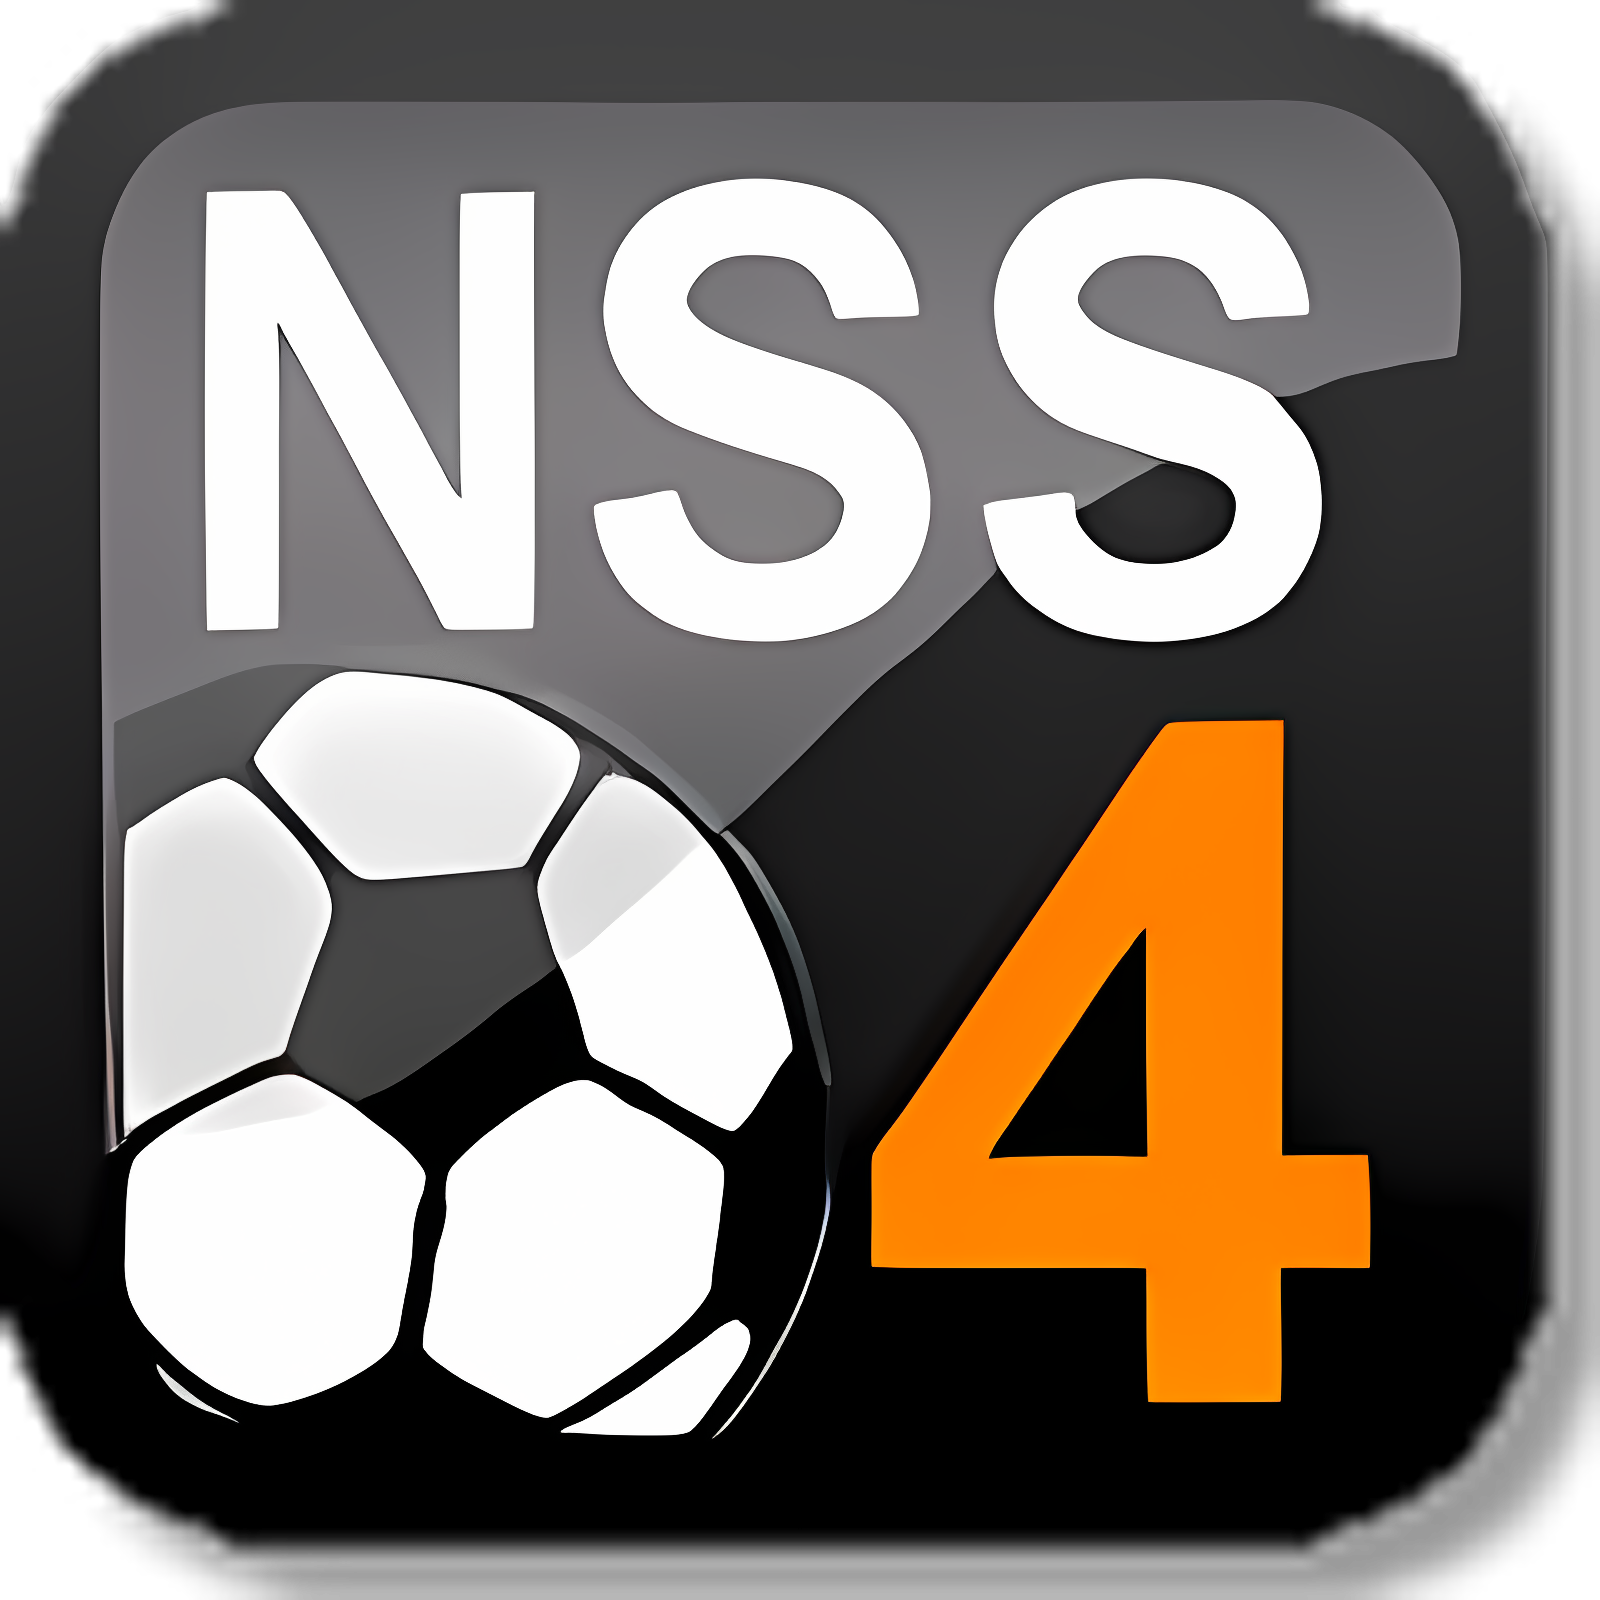 New Star Soccer 4